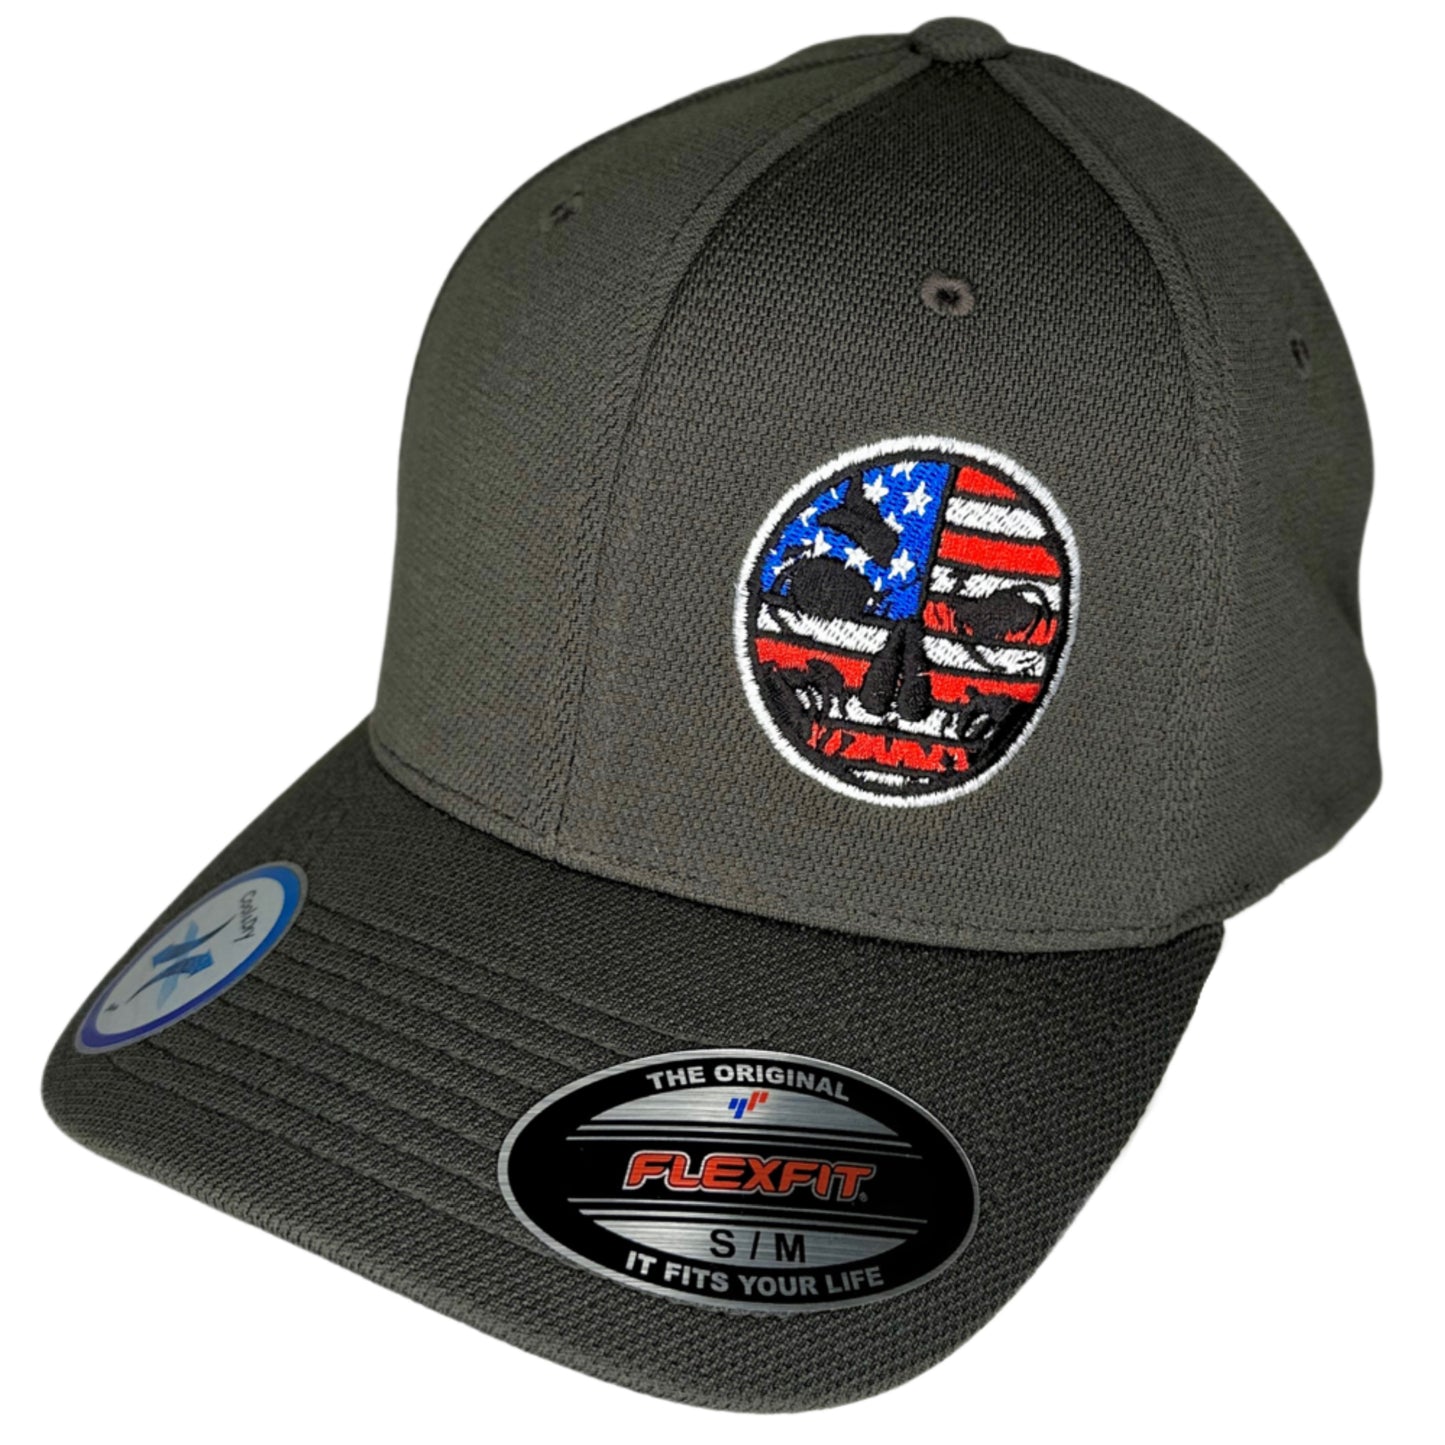 Flexfit "Never Fade" Charcoal Hat - Patriotic Circle